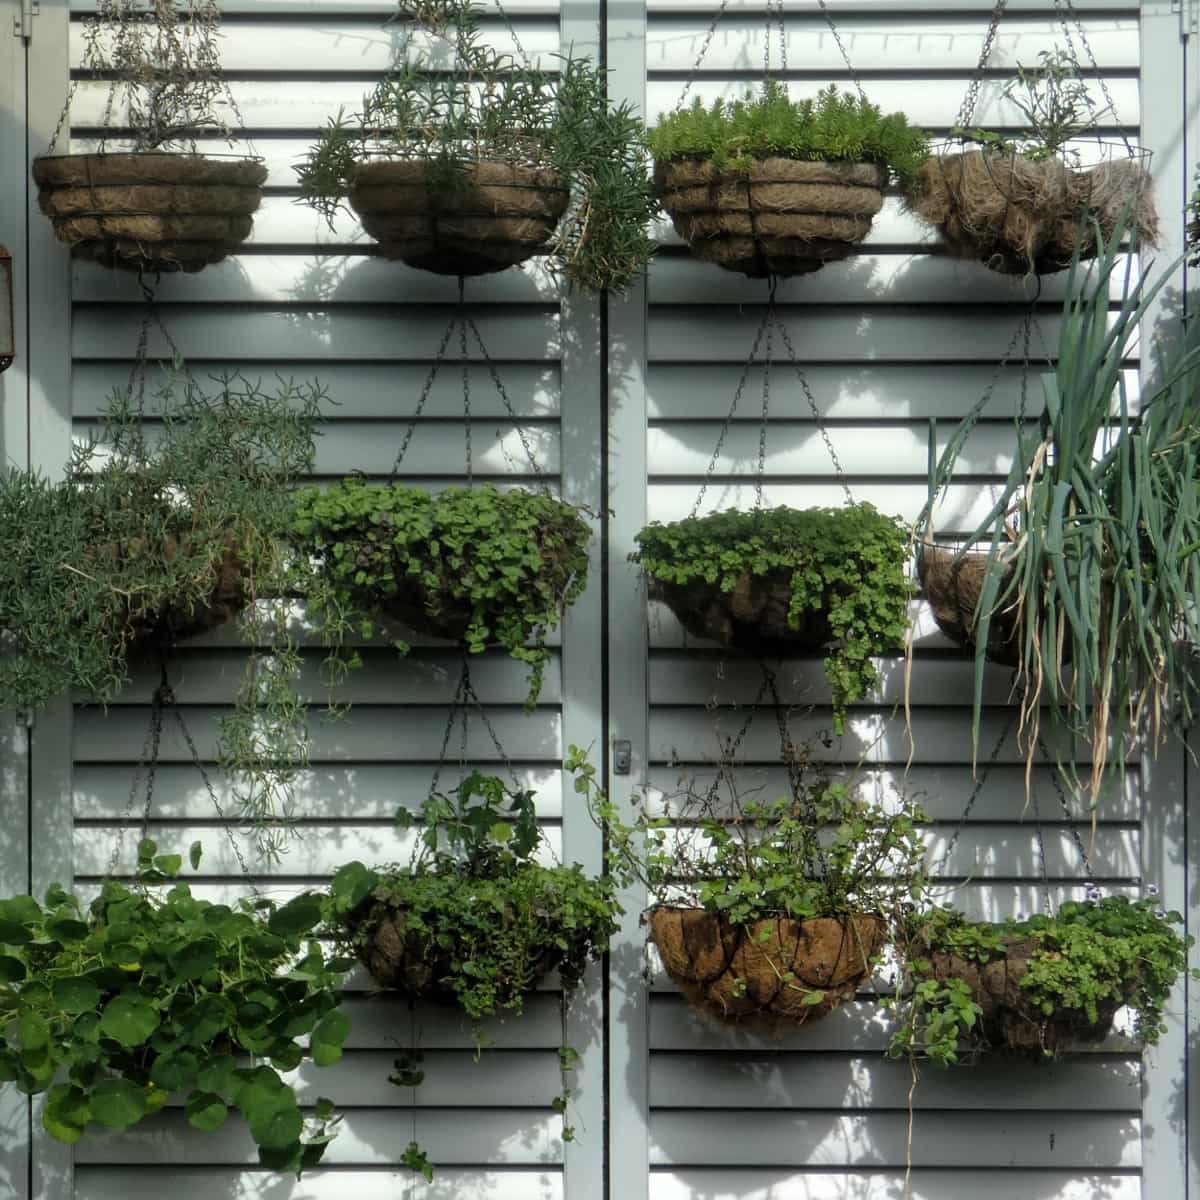 Gardening Tips for Indoor Plants
